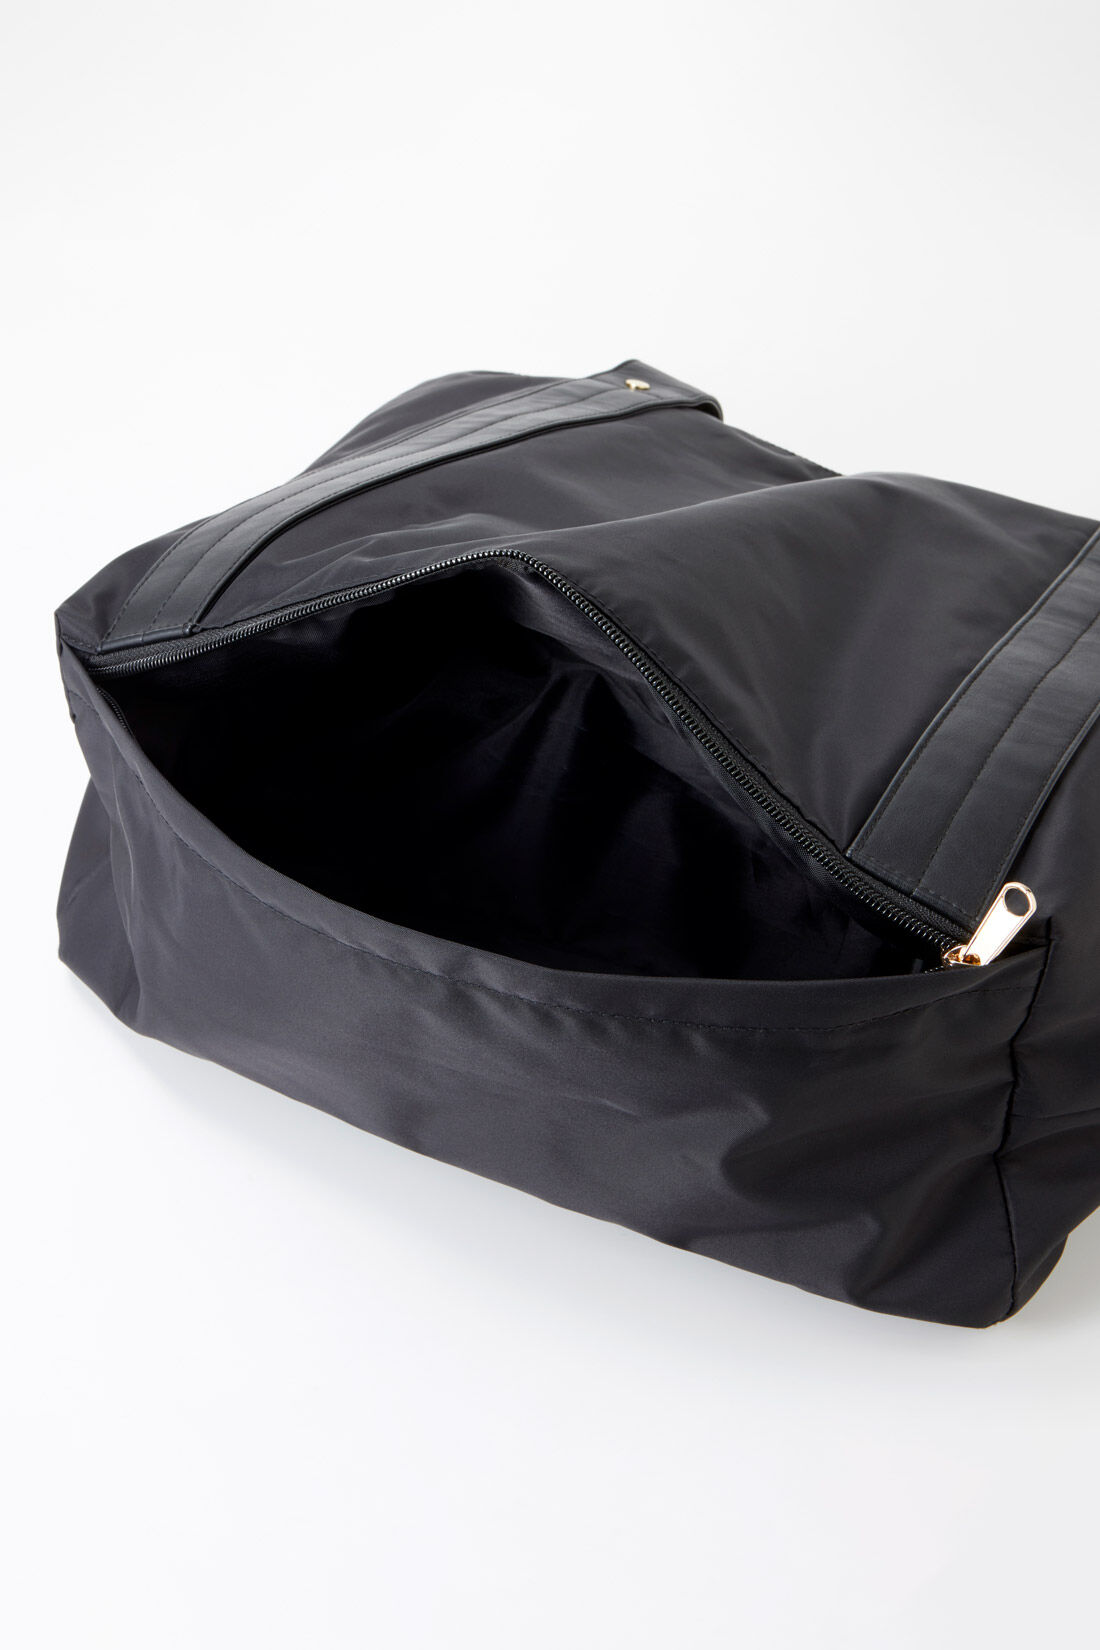 フェリシモMama|Moredde　サコッシュ付き　大容量2‐WAYマザーズトートバッグ〈ブラック〉|底にポケットがあるので、汚れものなど別に入れておきたいものはこちらに。